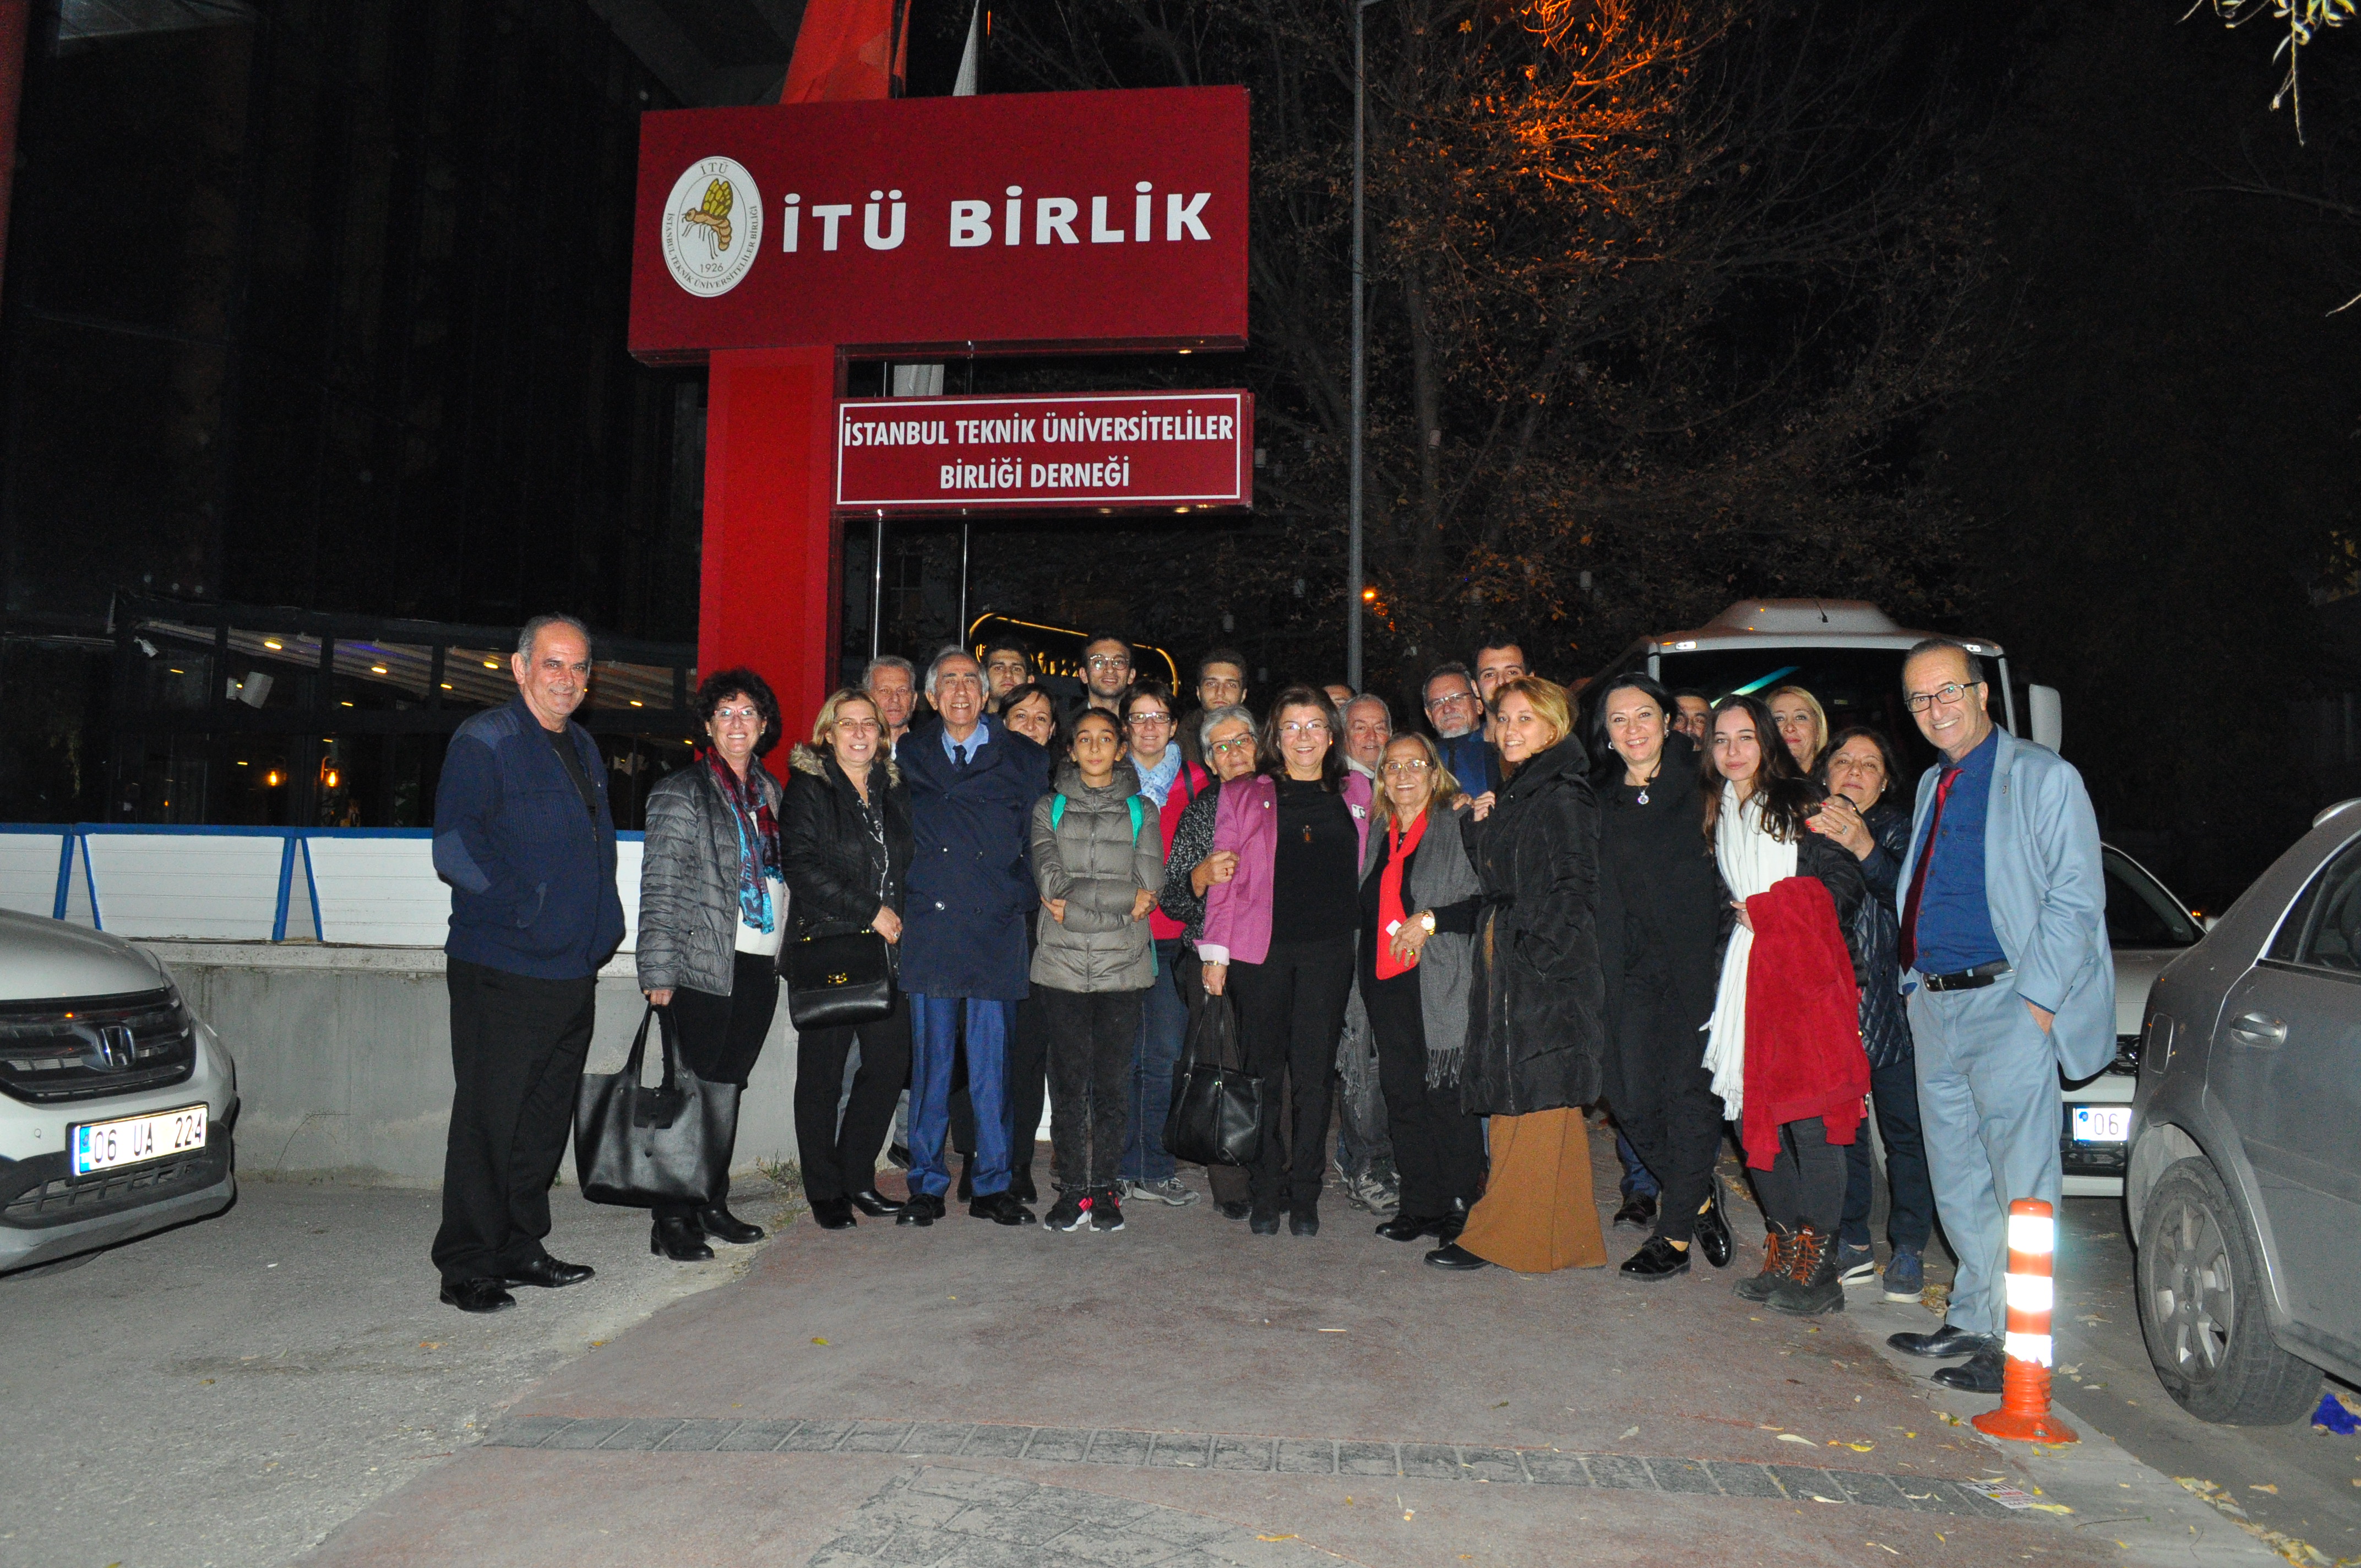 Ankara Genel Merkez Ziyaretimiz' i Anıtkabir'de Atamızın huzuruna çıktıktan sonra, öğrencilerimiz, ailelerimiz ile birlikte ziyaret ettik. 